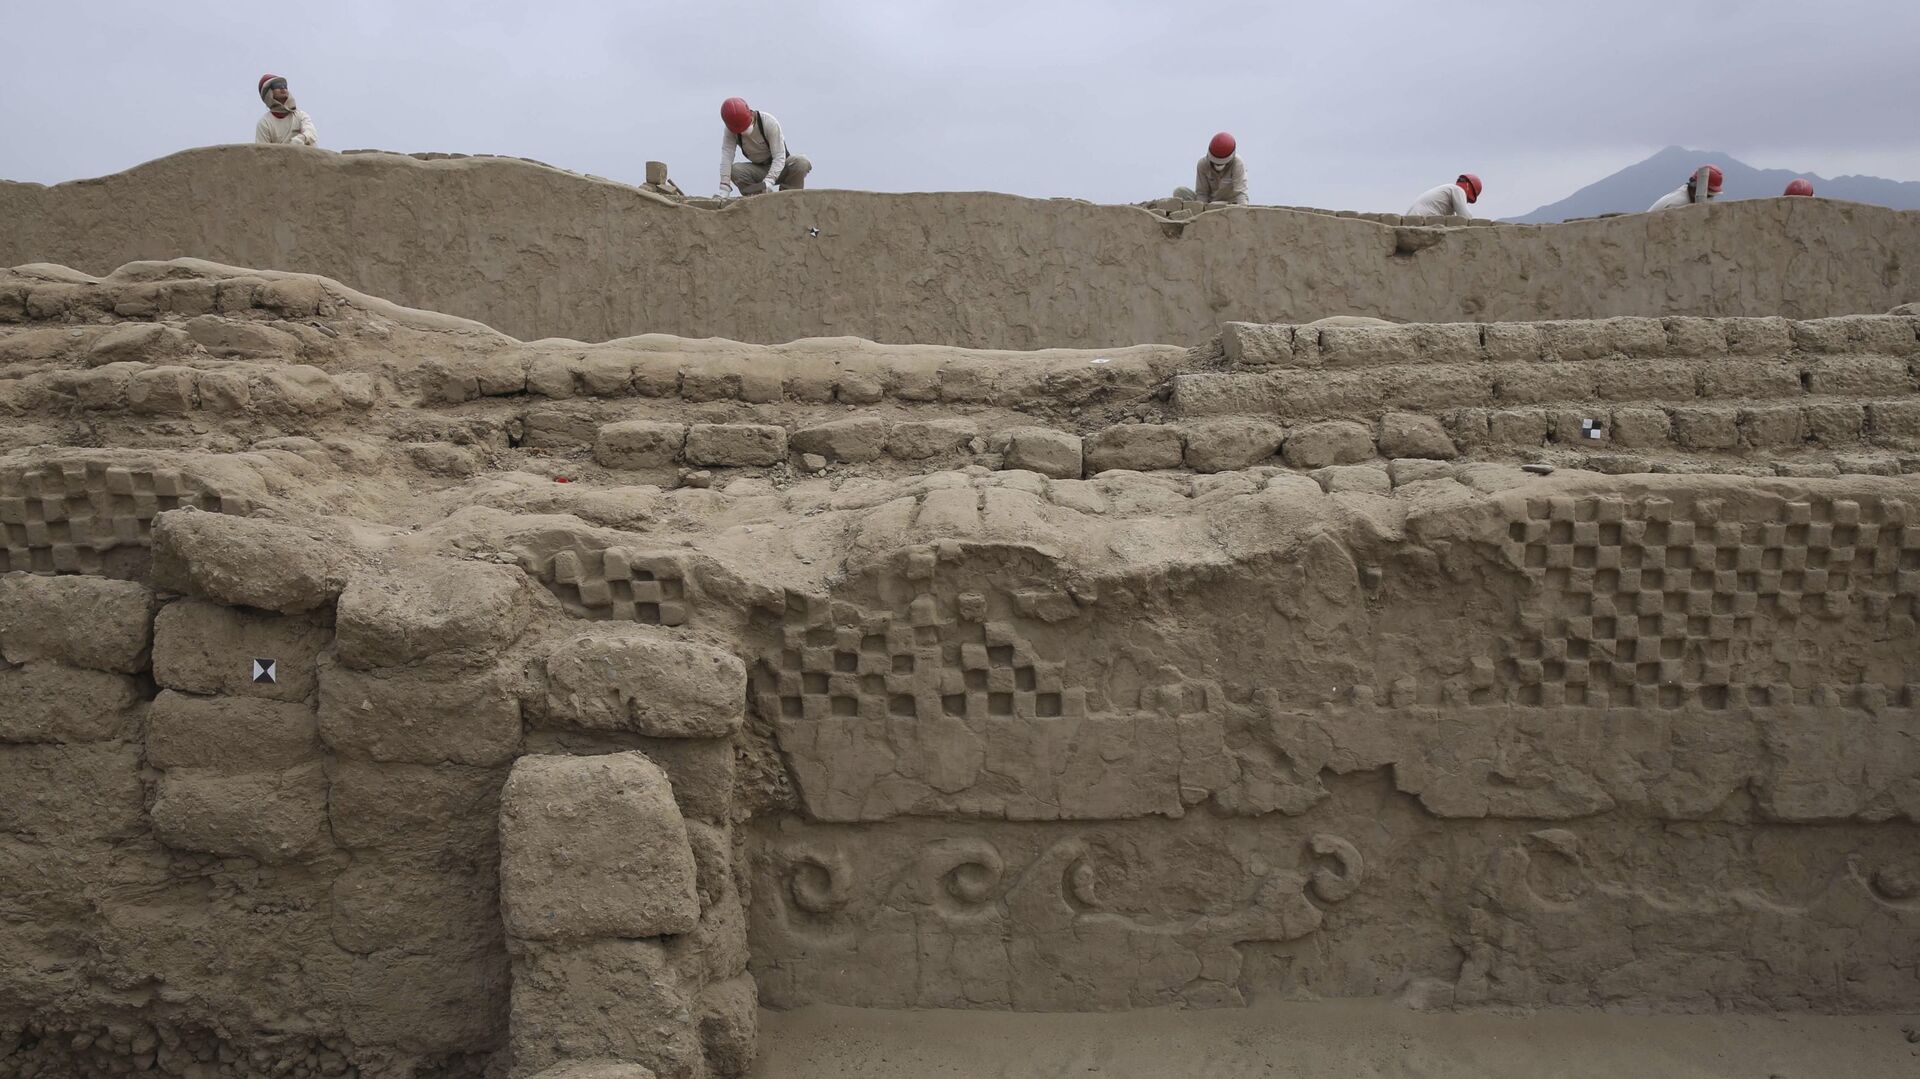 Археологи работают над частью недавно обнаруженного города инков Чан-Чан, недалеко от Трухильо, Перу - Sputnik Azərbaycan, 1920, 28.11.2021